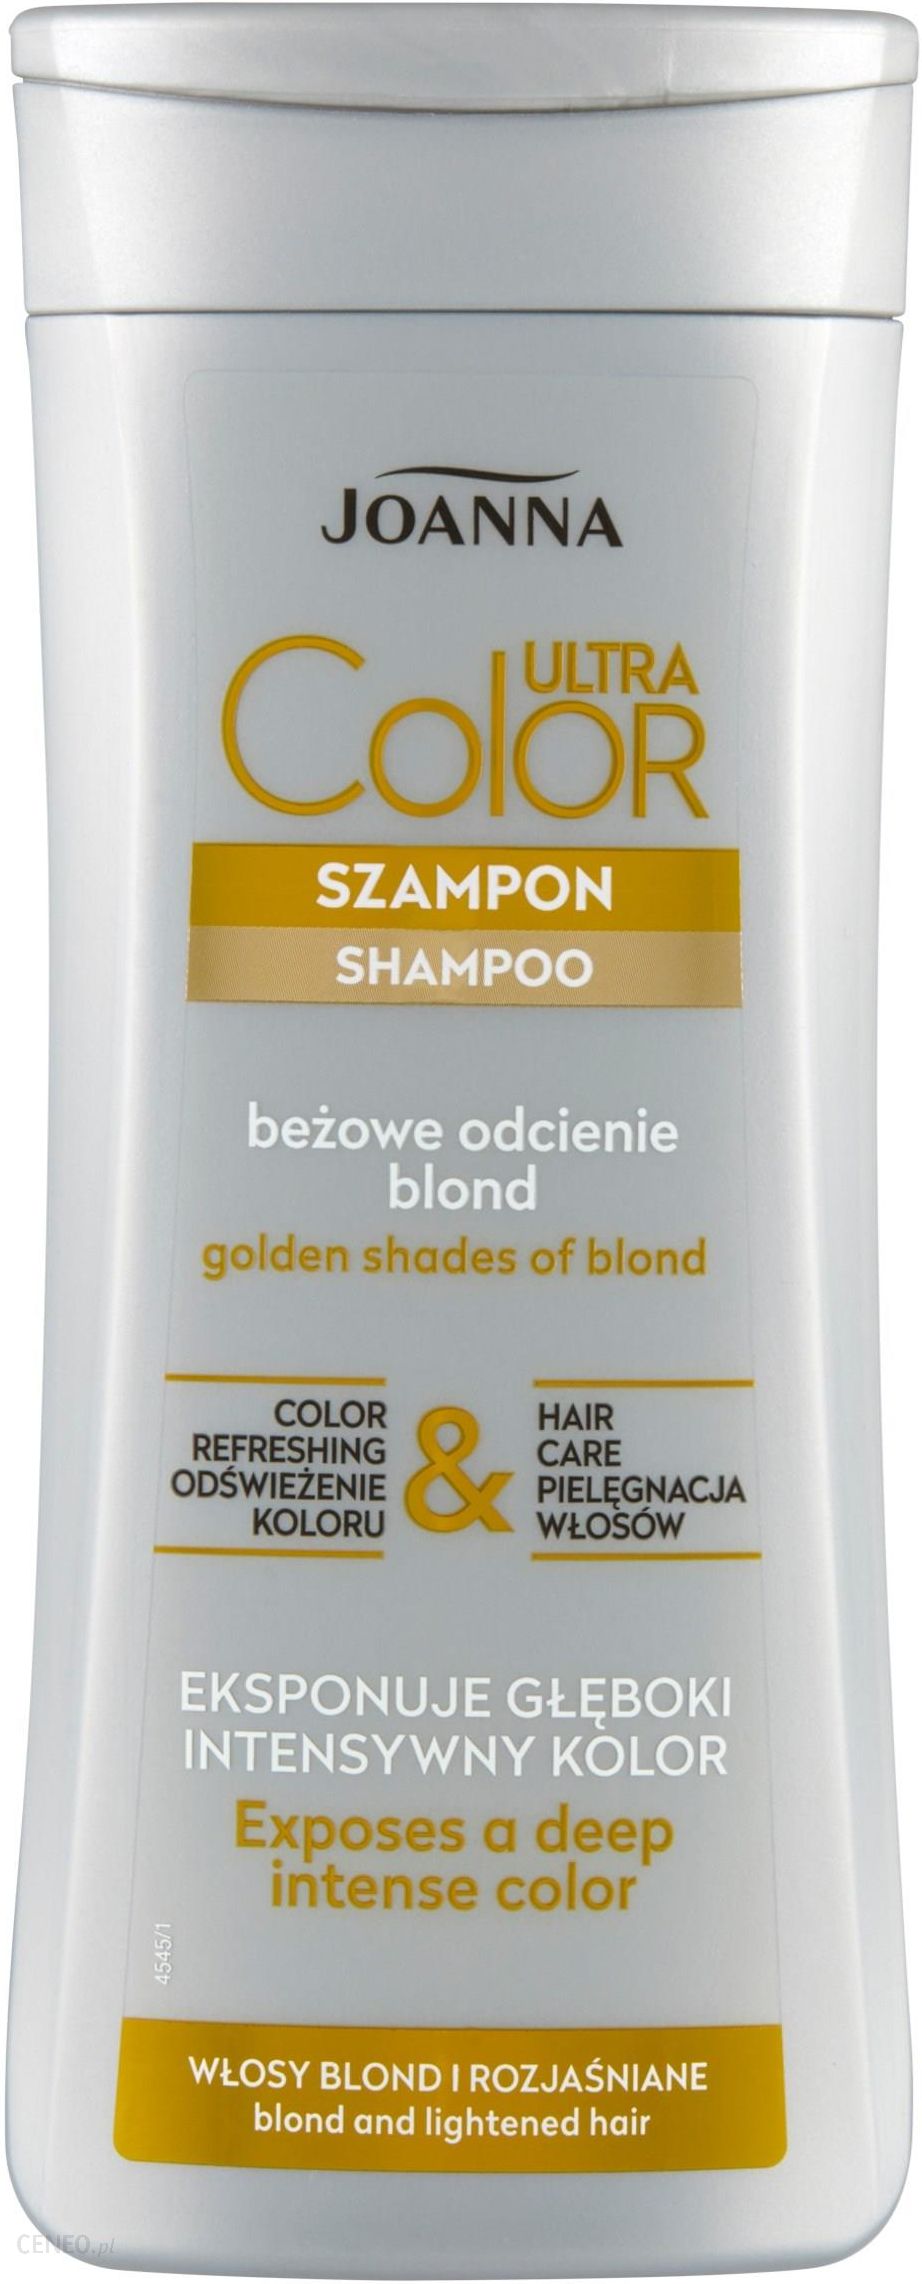 szampon do włosów blond beżowy